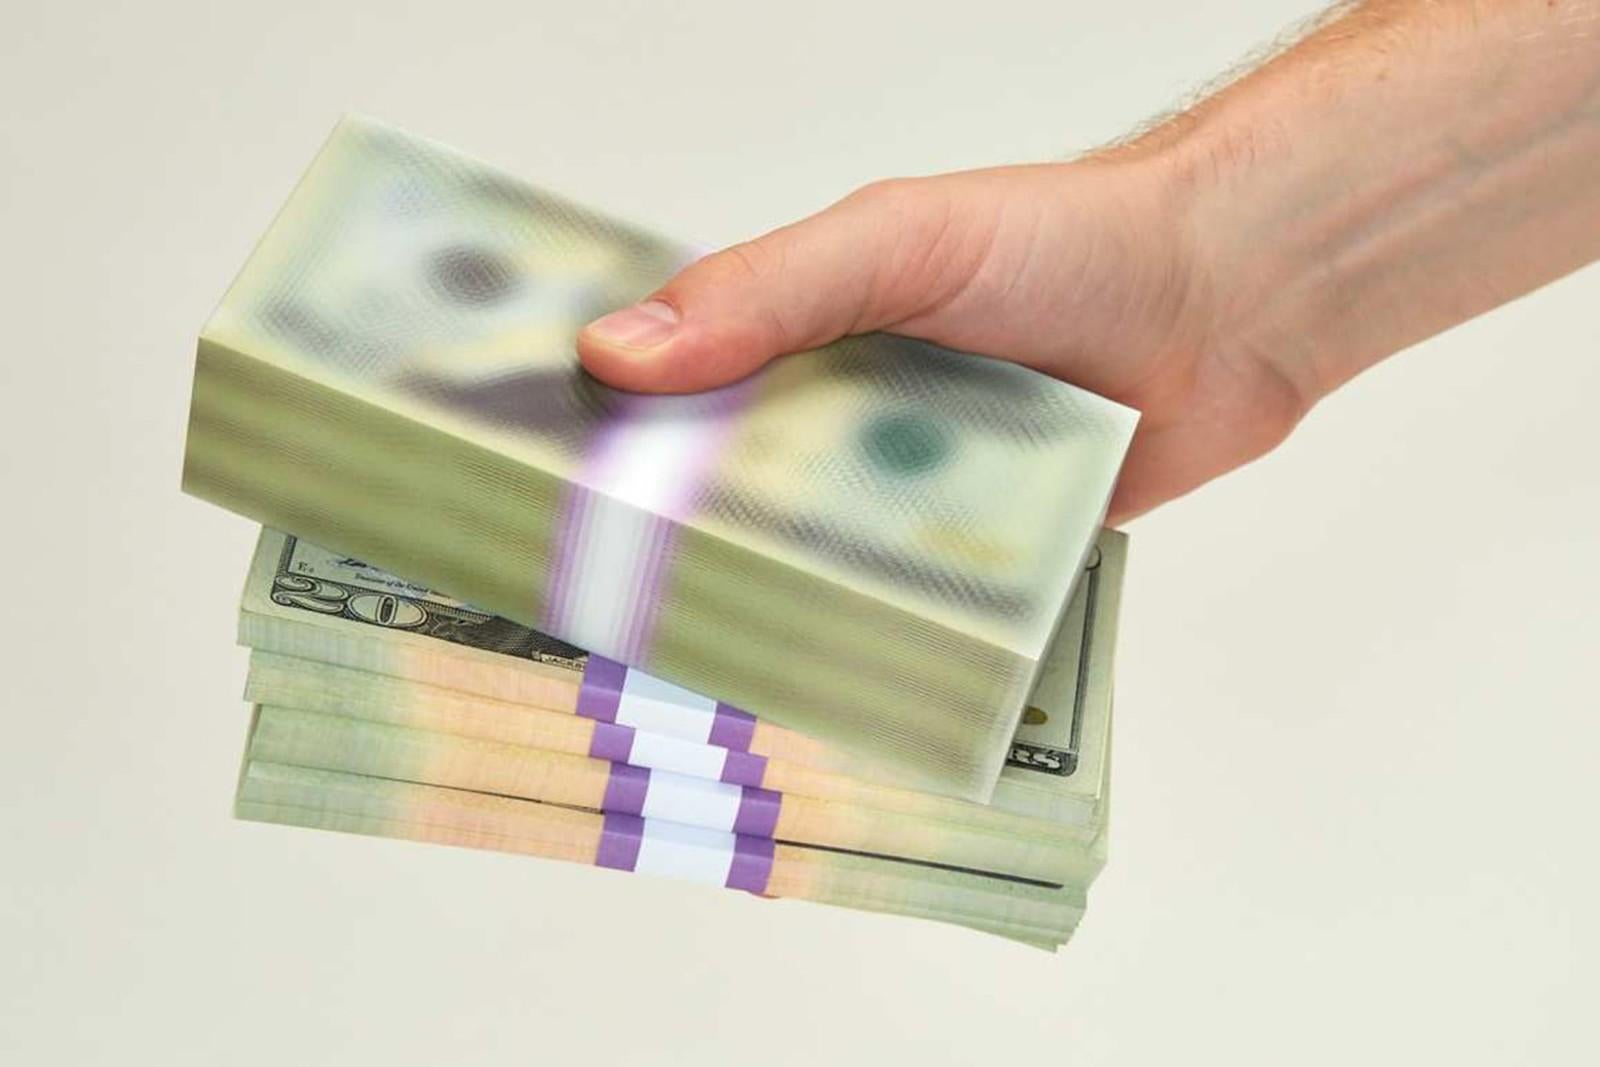 Blurred US Dollar Bills - Sculpture by MSCHF